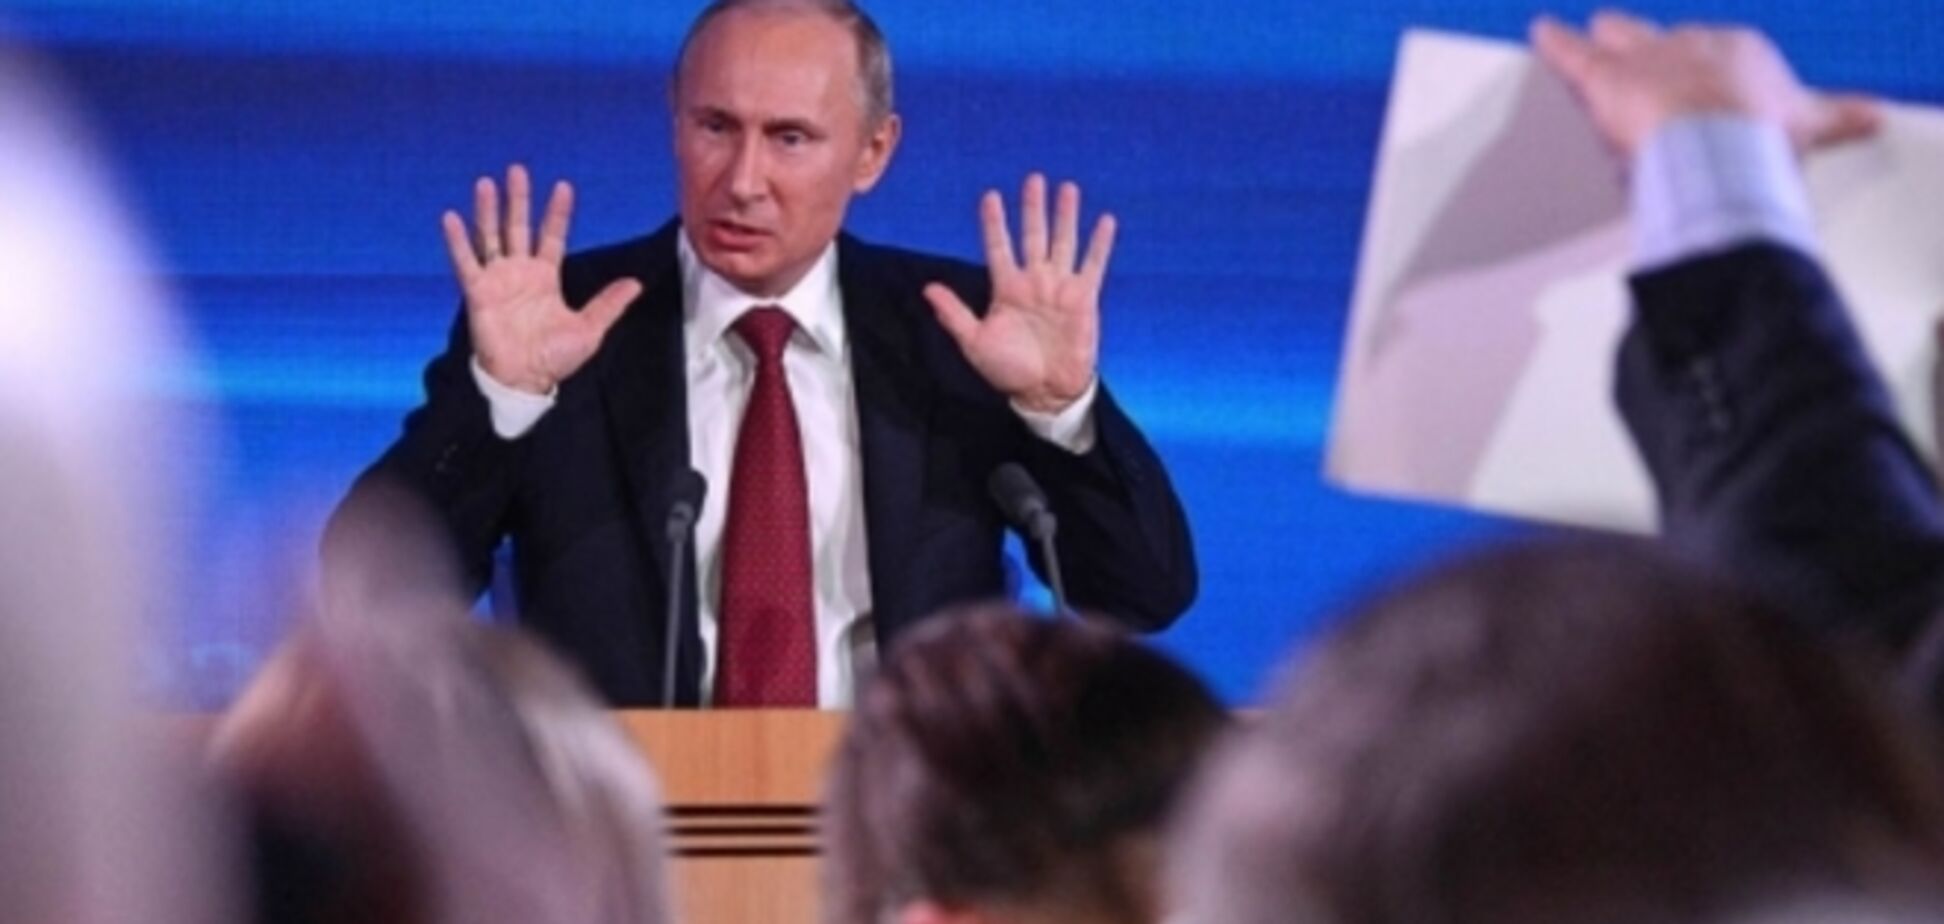 8 українських журналістів зможуть поставити запитання Путіну на майбутній прес-конференції 